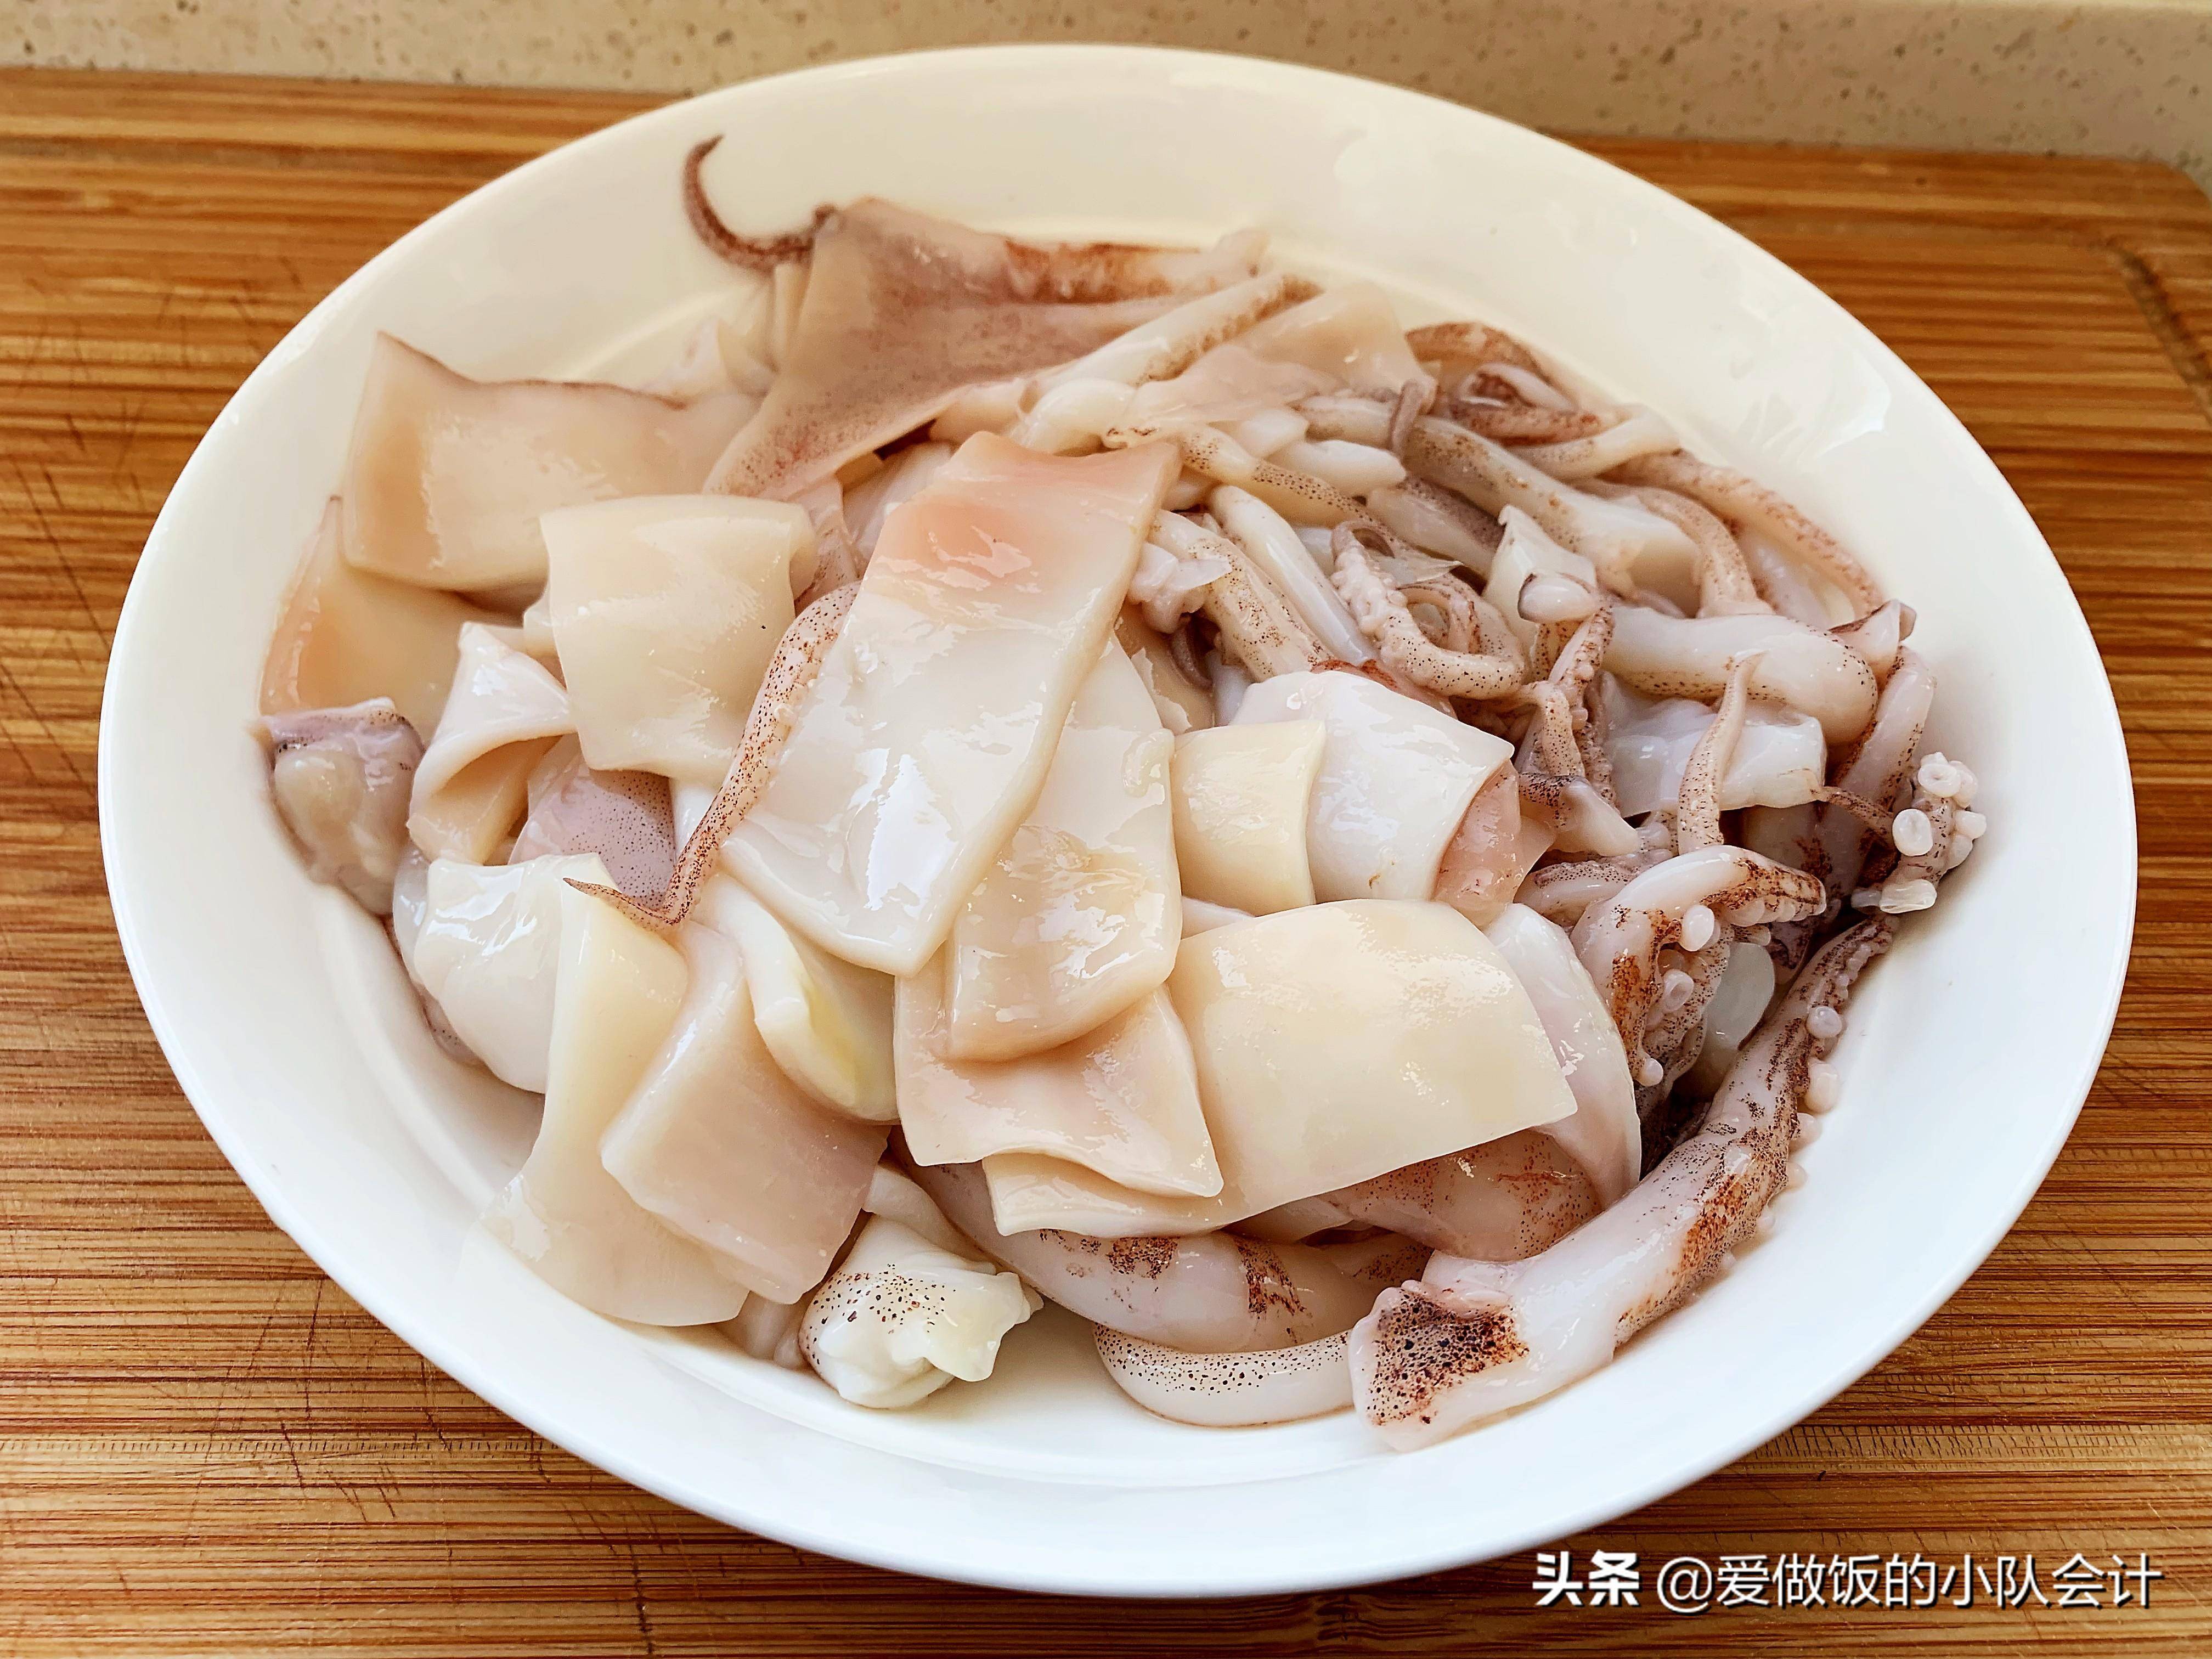 『鱿鱼如何焯水』2,沸水下锅,鱿鱼的表面由于突然受热,会使鱿鱼肉中的